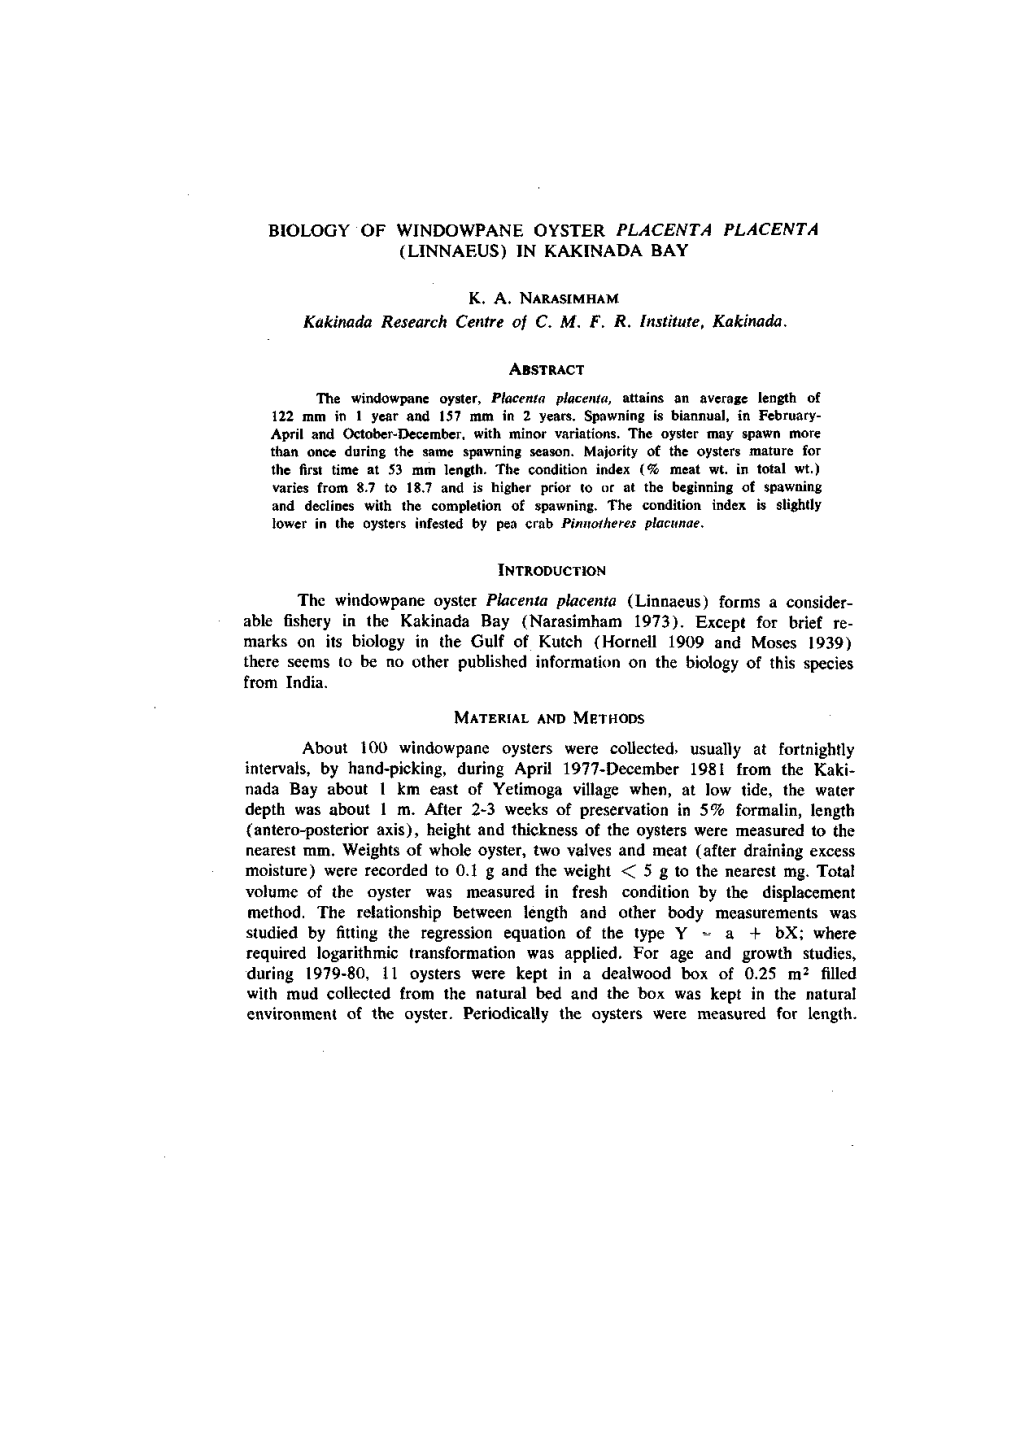 Biology of Windowpane Oyster Placenta Placenta (Linnaeus) in Kakinada Bay